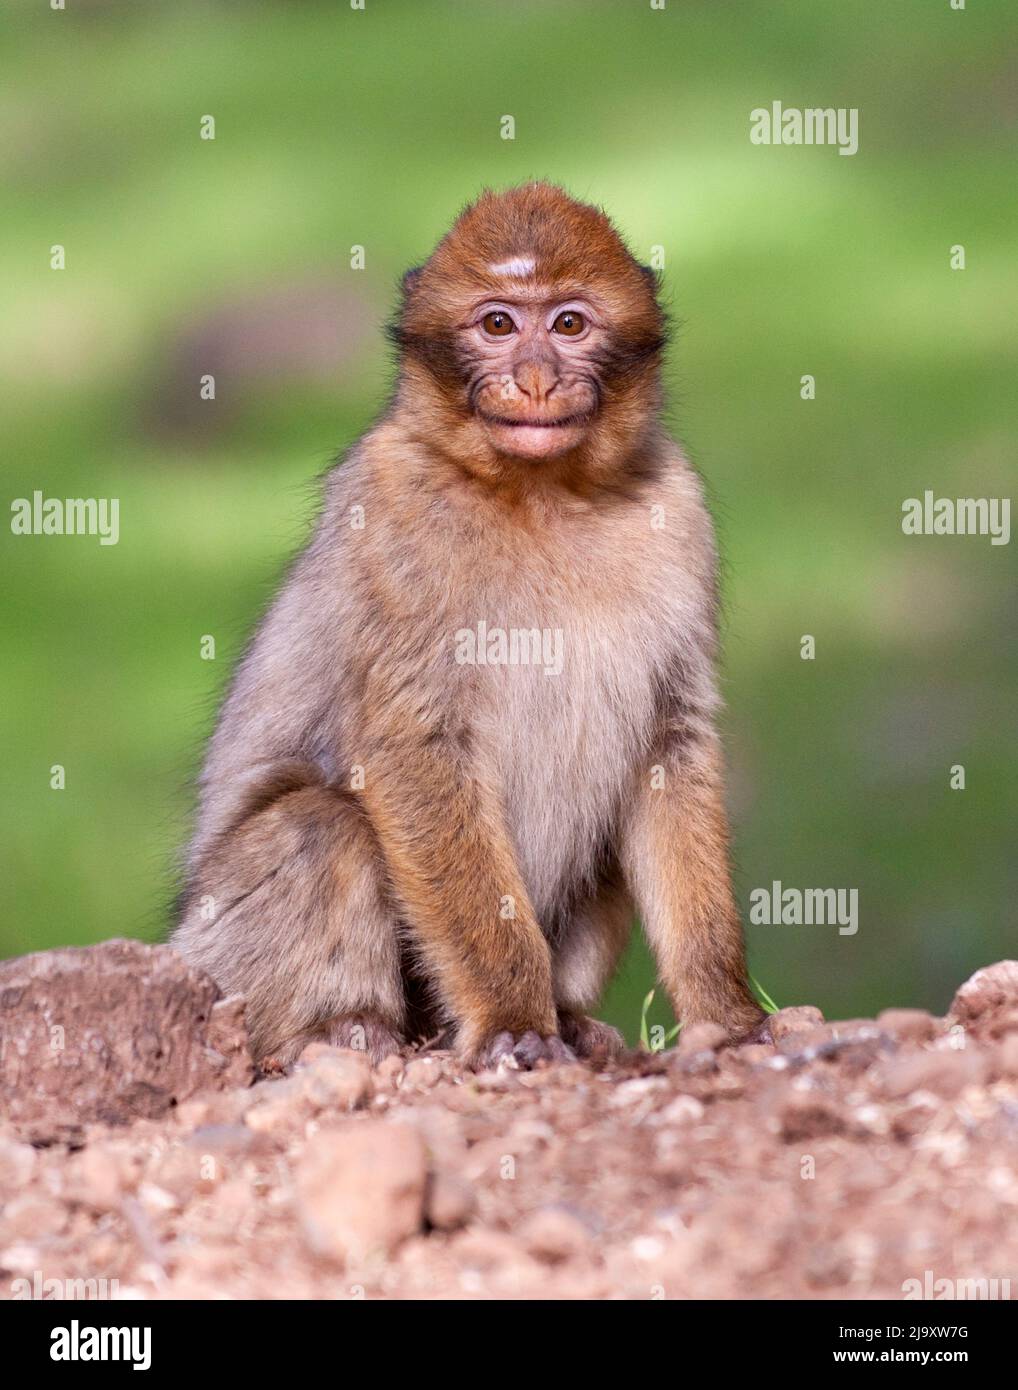 Un macaco barbero, también conocido como una Ape barbárera, del bosque de cedro de la región del Atlas Medio de Marruecos. Foto de stock